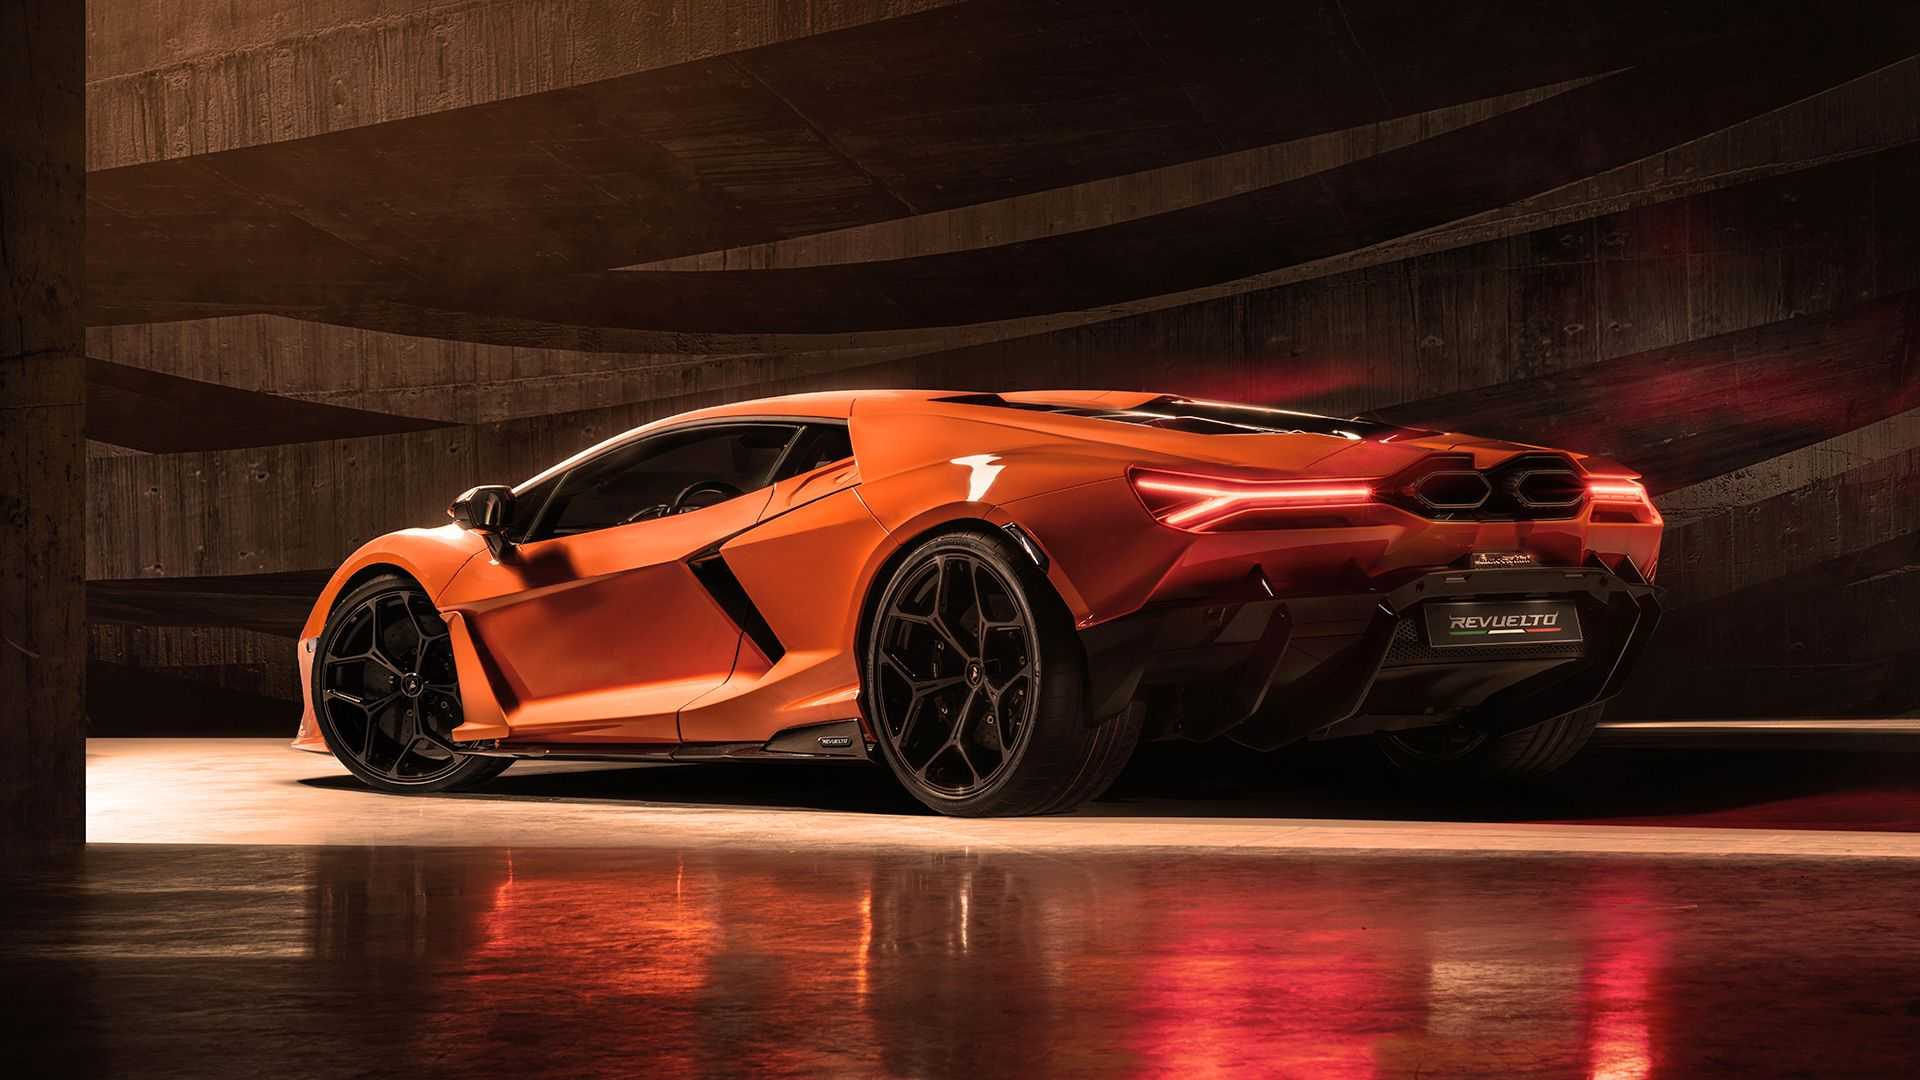 Lamborghini Revuelto chính thức chào sân: Hậu duệ Aventador, công suất trên 1.000 mã lực - Ảnh 3.